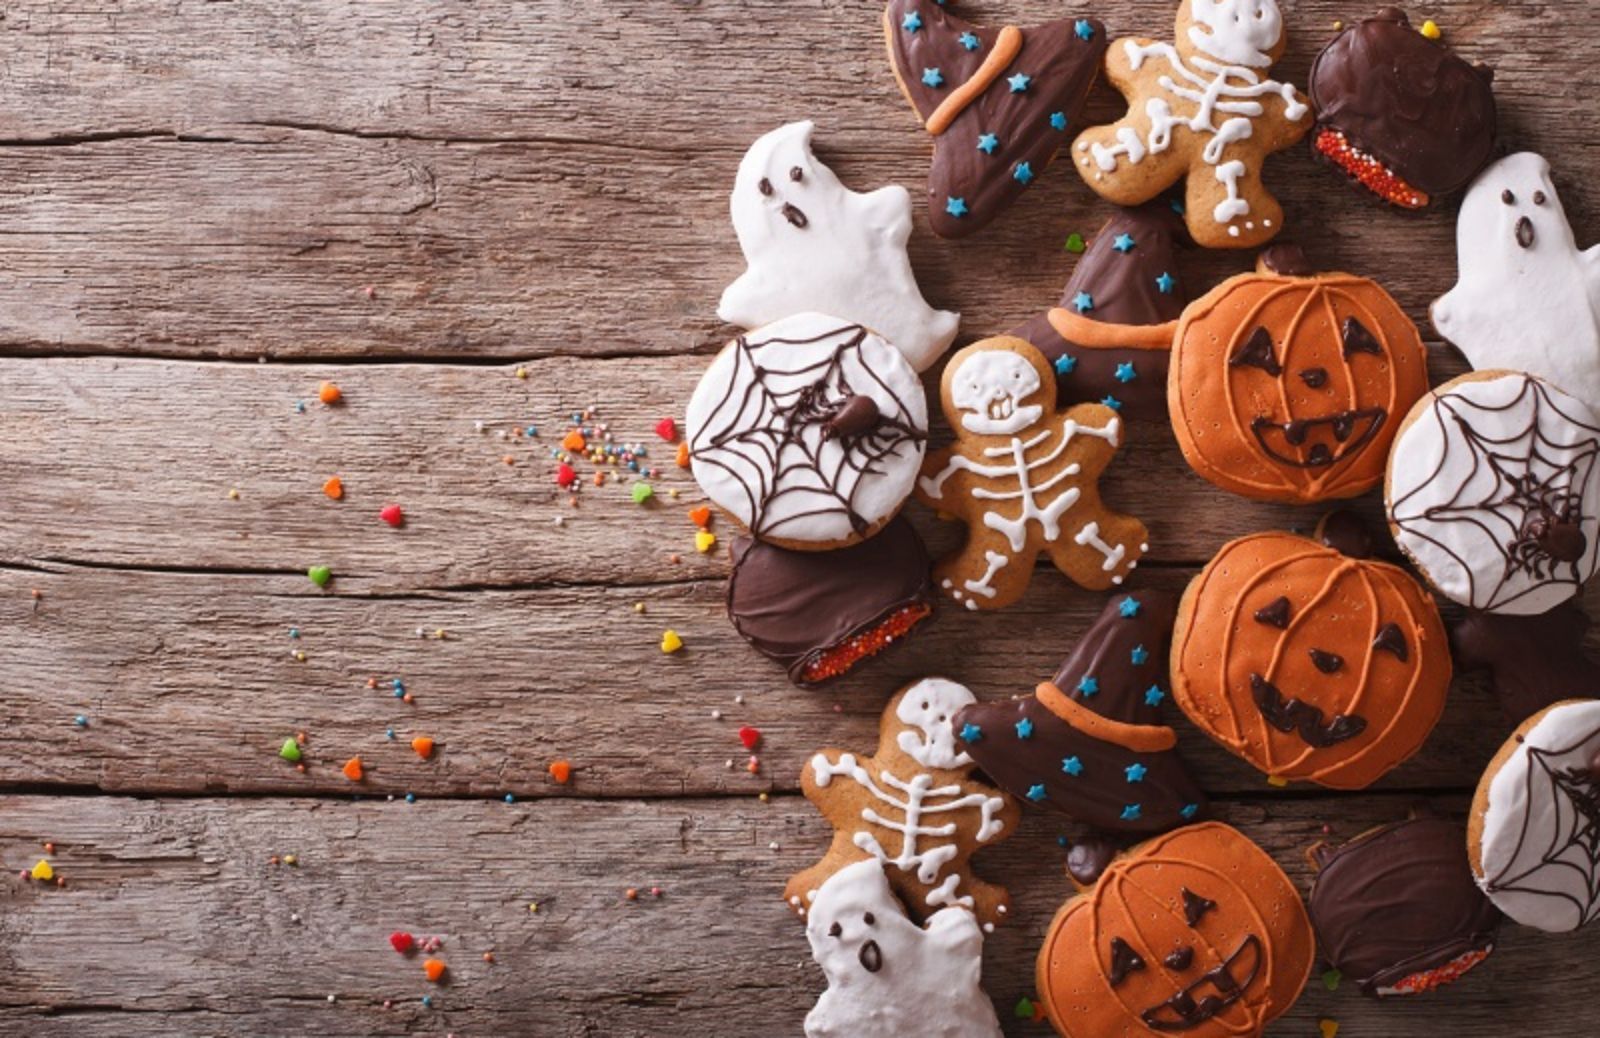 Come decorare casa per Halloween: 5 idee originali (e spaventose) 